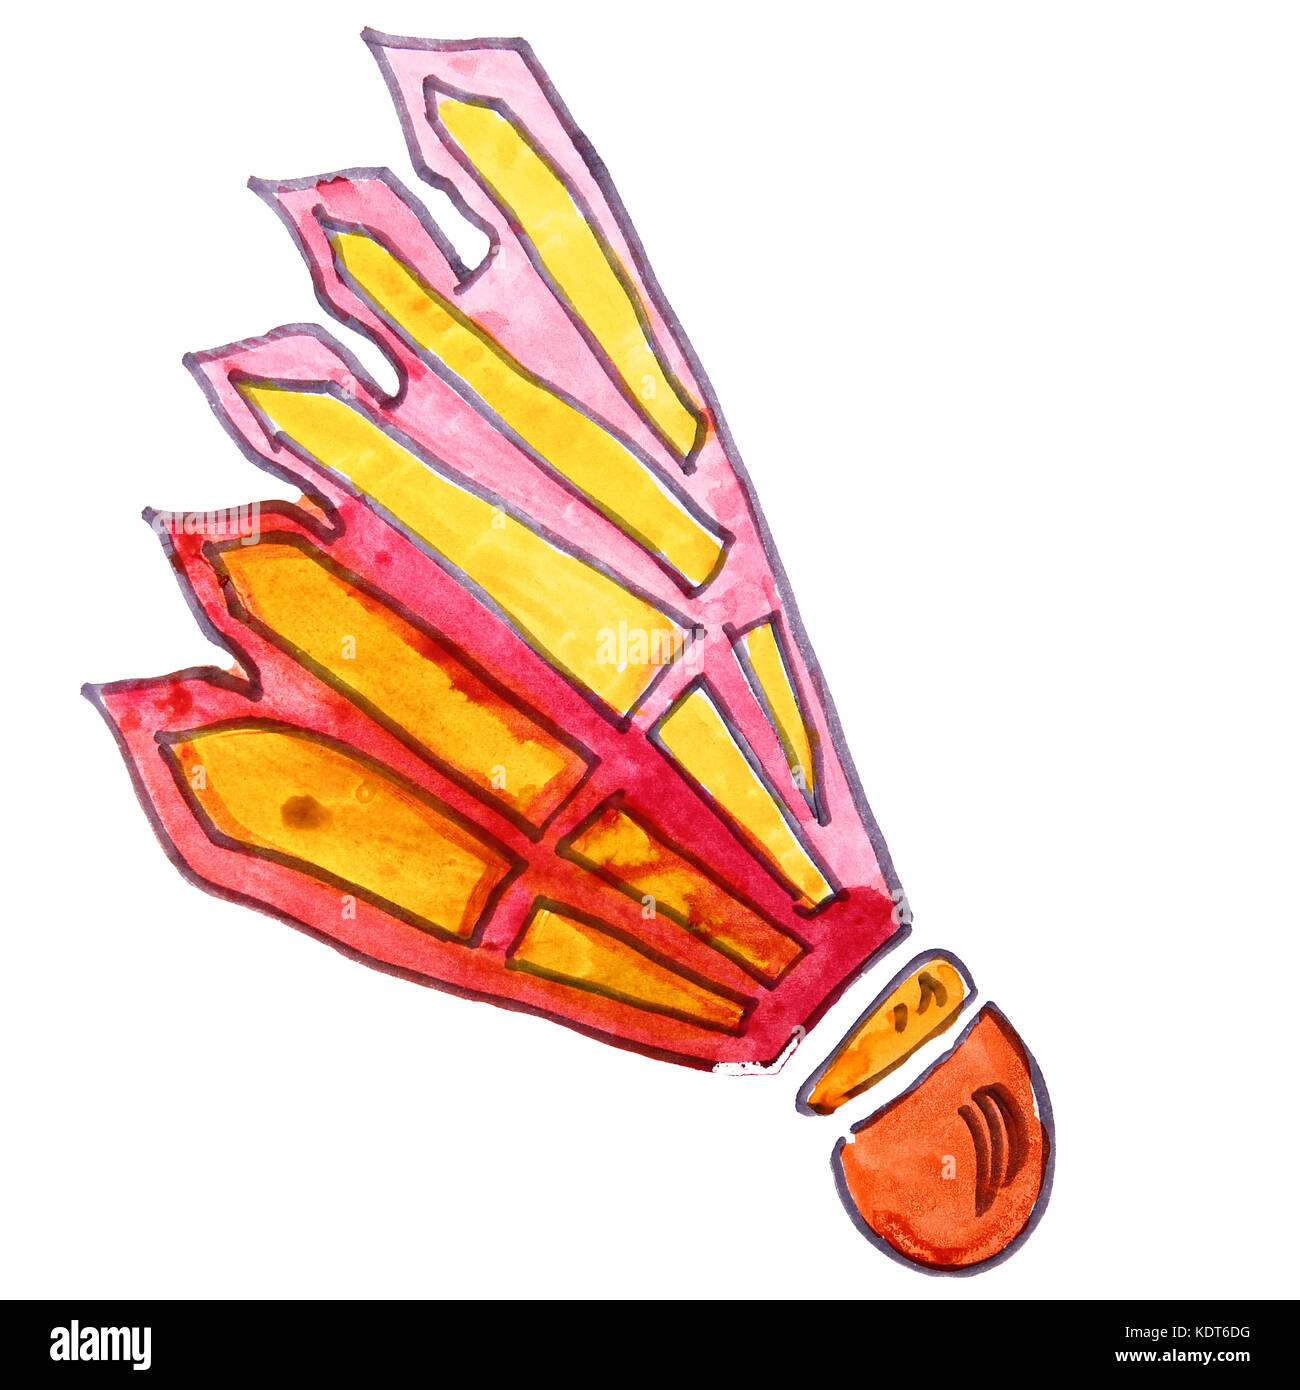 Aquarell Zeichnung kinder cartoon Federball auf einem weißen backgroun Stockfoto